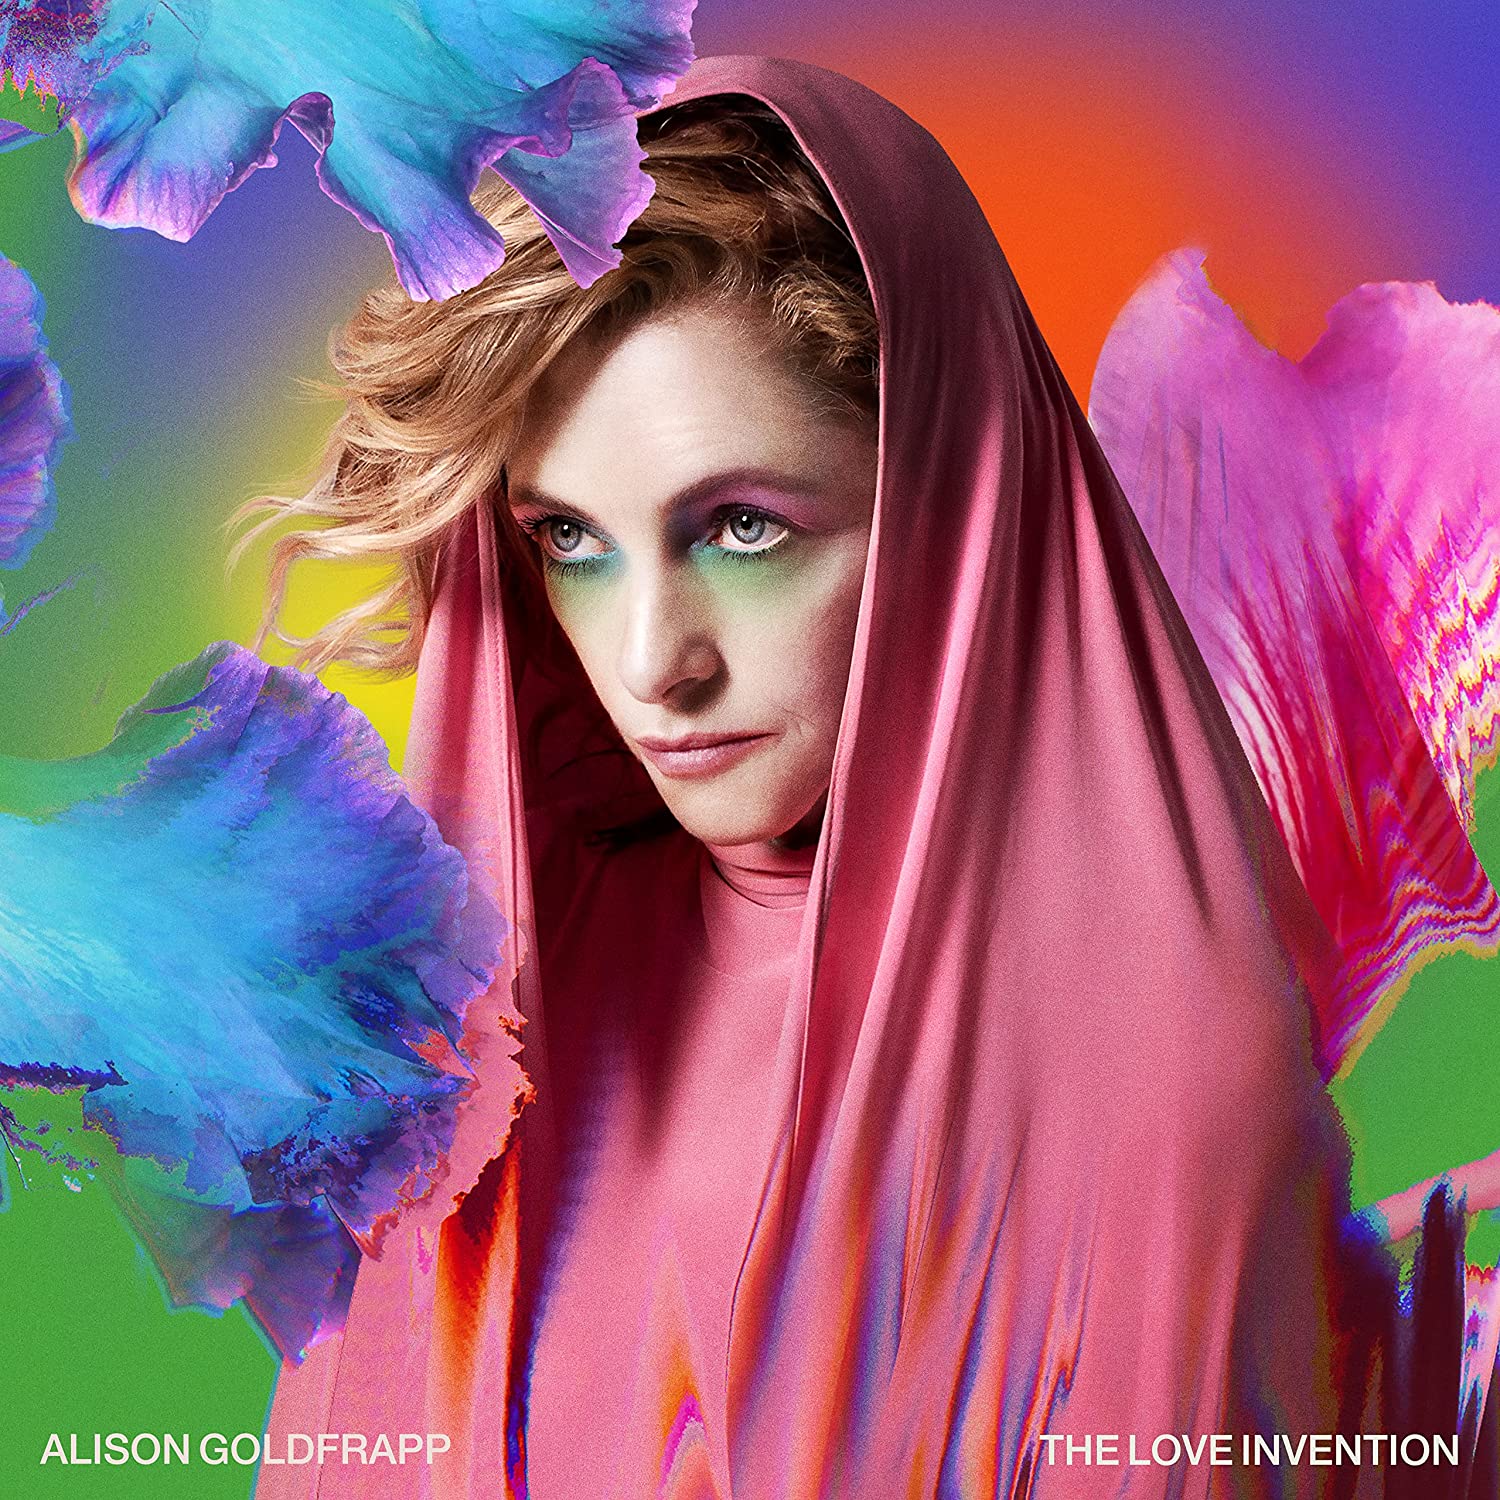 Alison Goldfrapp - The Love Invention (Vinyl LP)